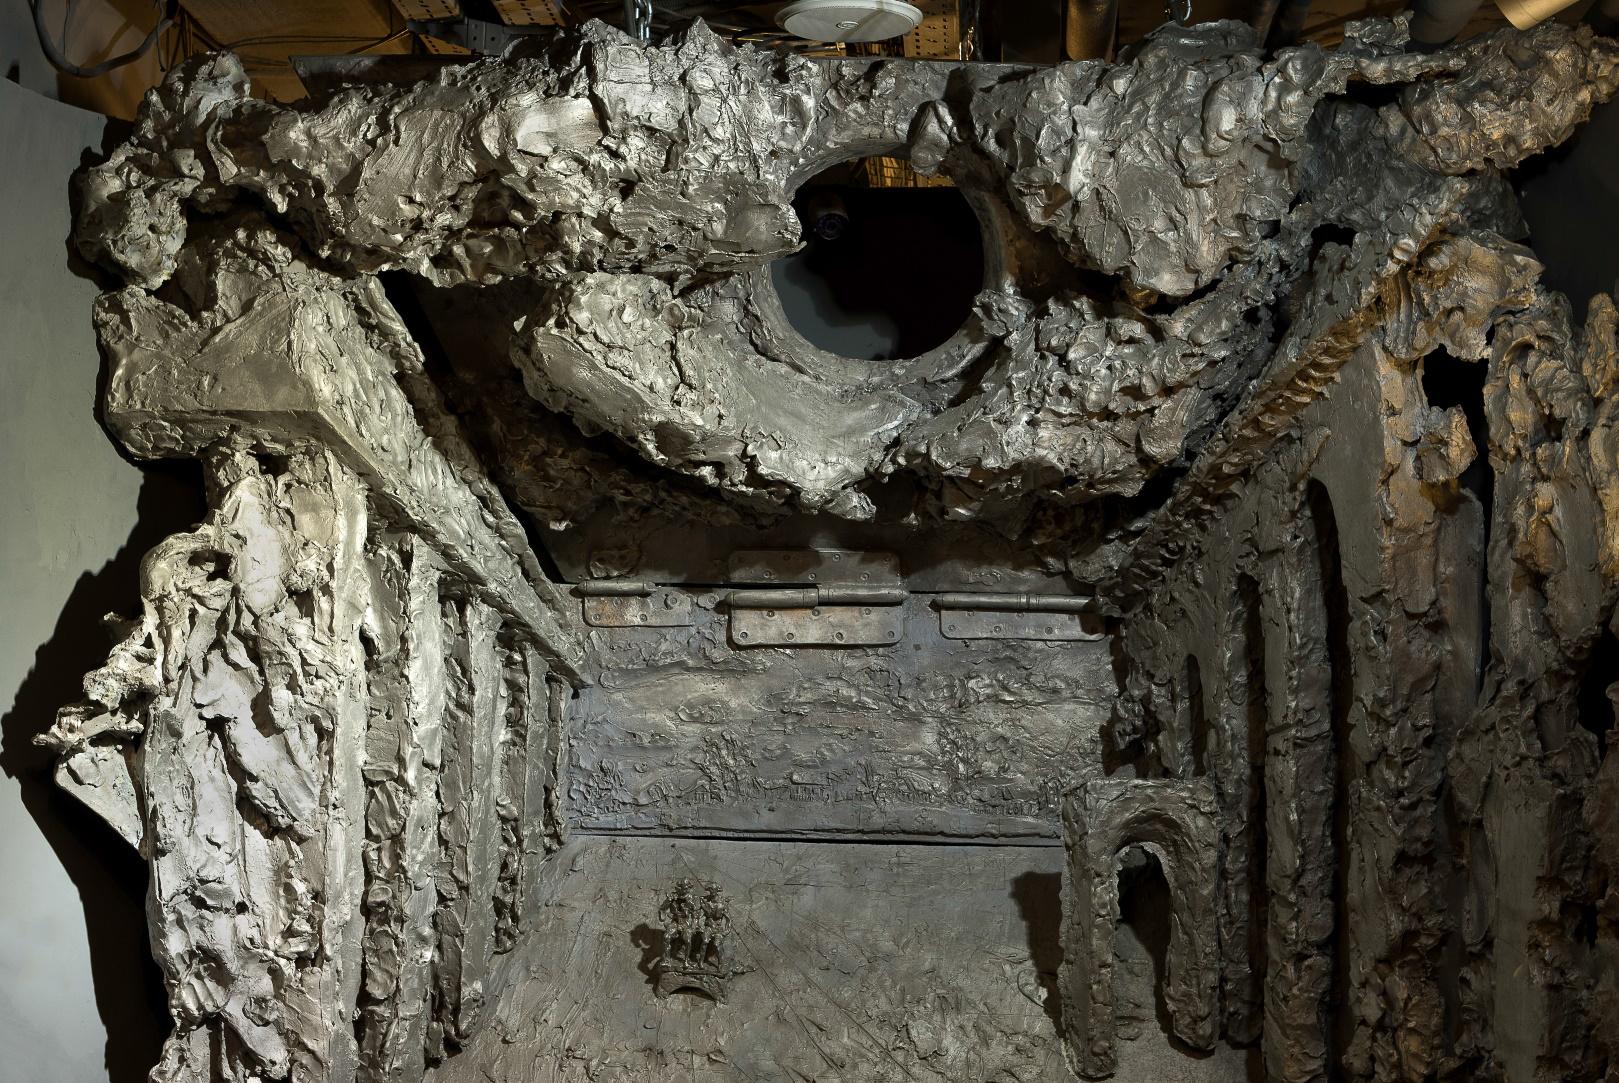 The Third Rome, 236 х145 х 214 cm in aluminum, 2013

